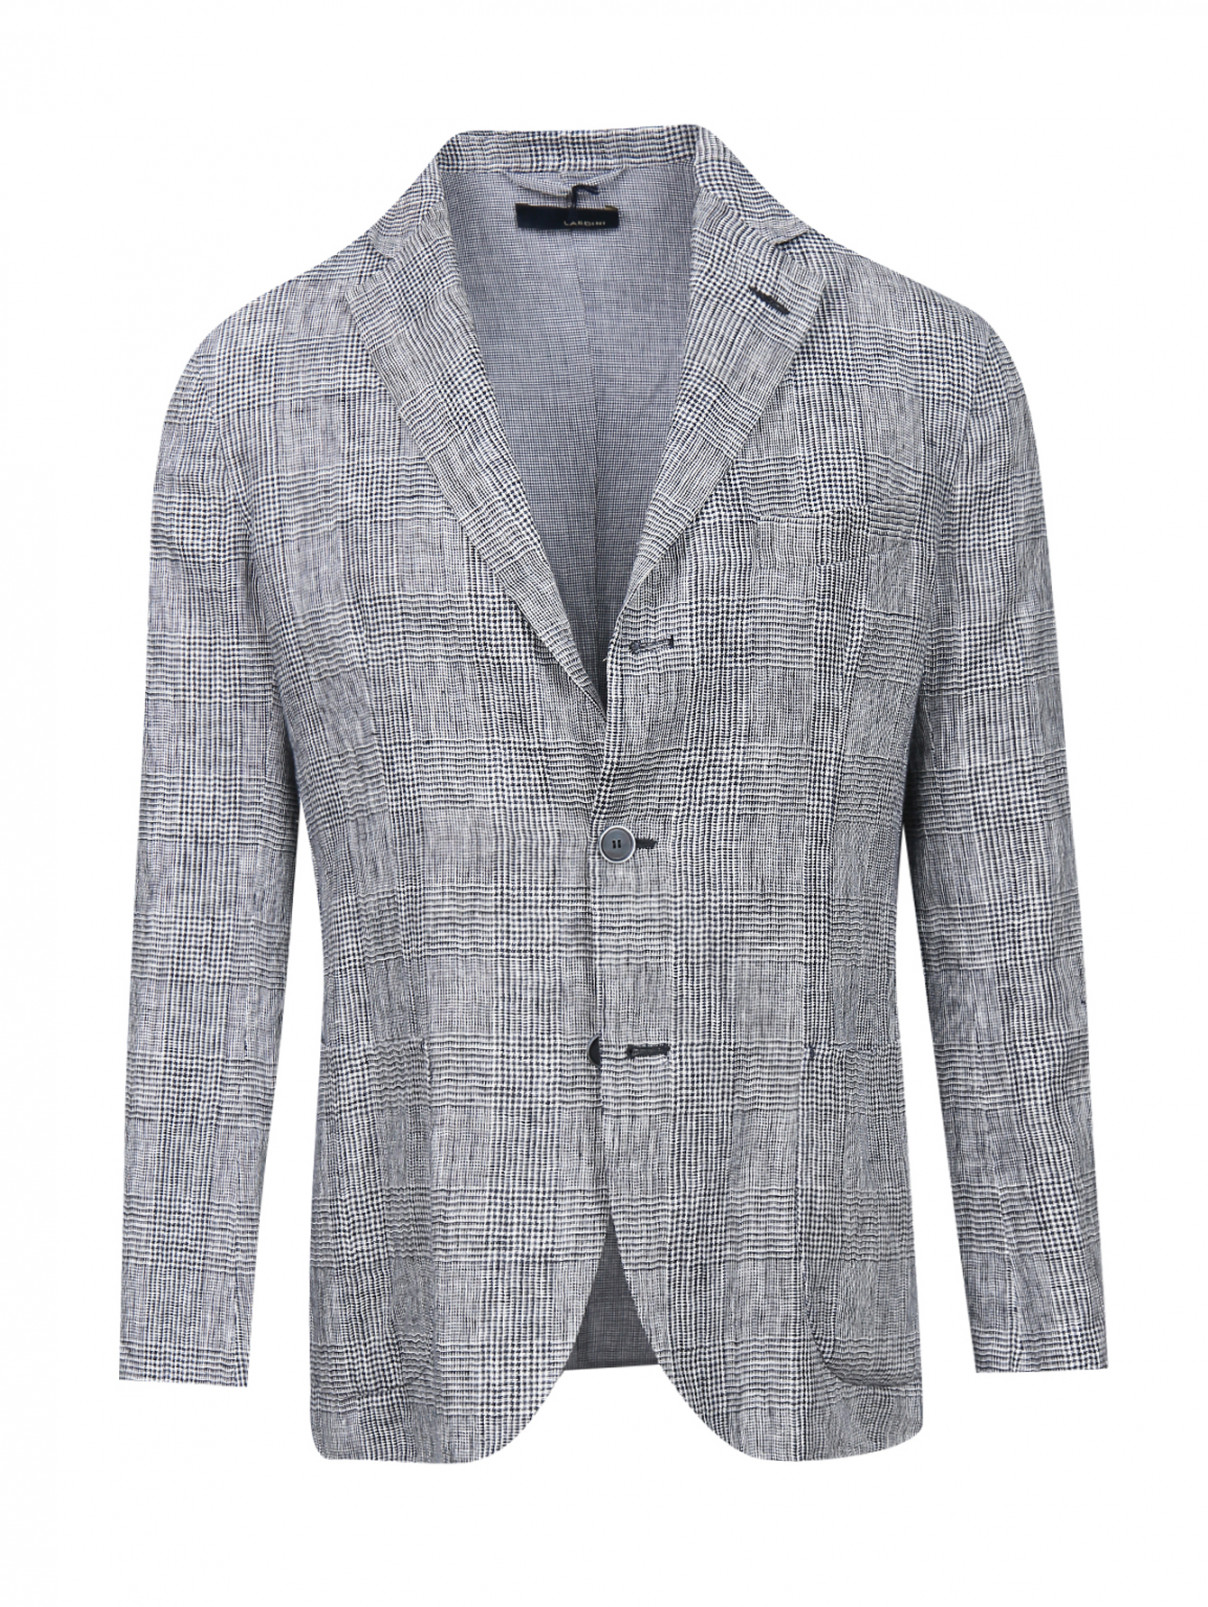 Пиджак  из хлопка и льна с узором "клетка" LARDINI  –  Общий вид  – Цвет:  Серый